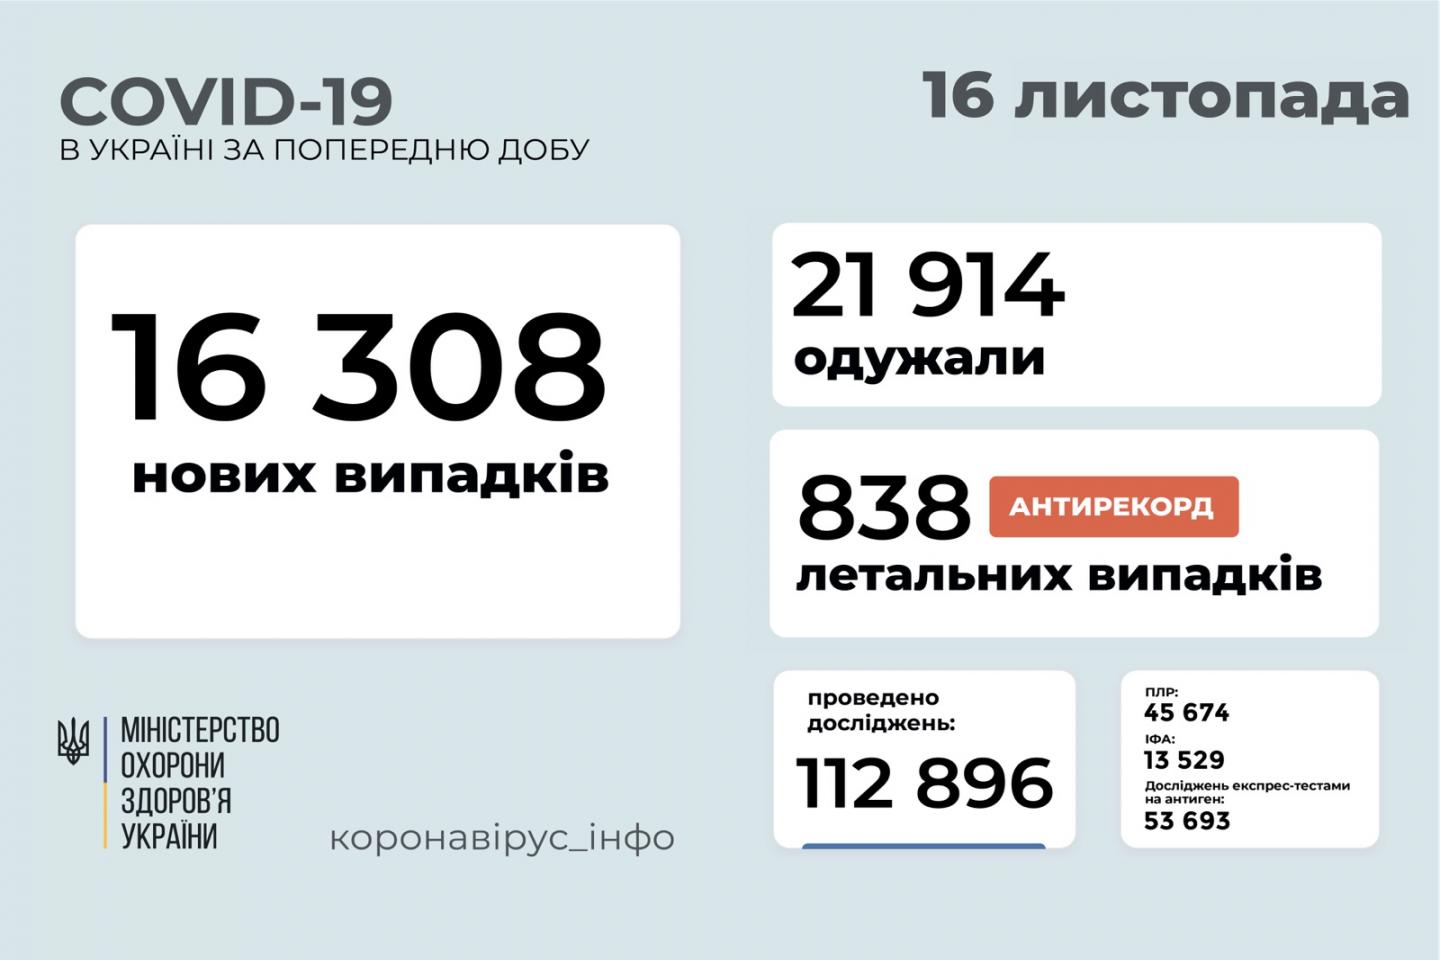 http://dunrada.gov.ua/uploadfile/archive_news/2021/11/16/2021-11-16_873/images/images-23158.jpg